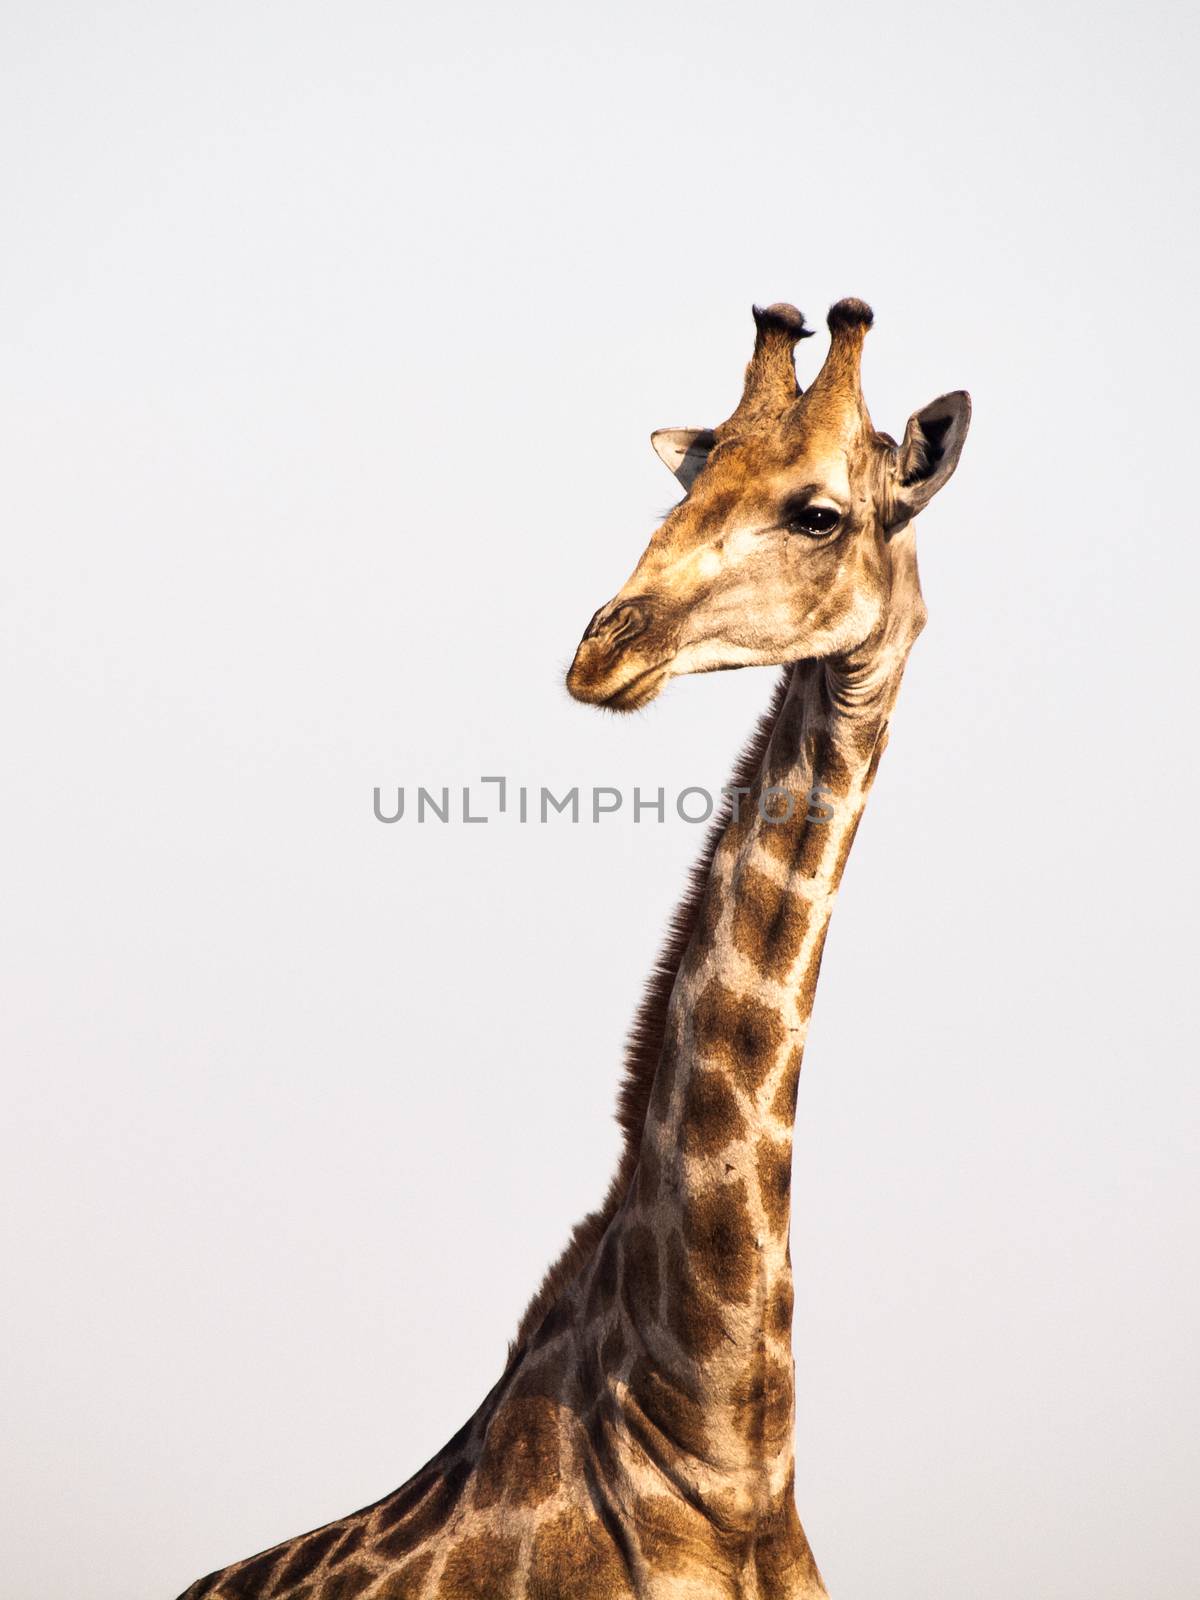 Giraffe portrait on safari wild drive